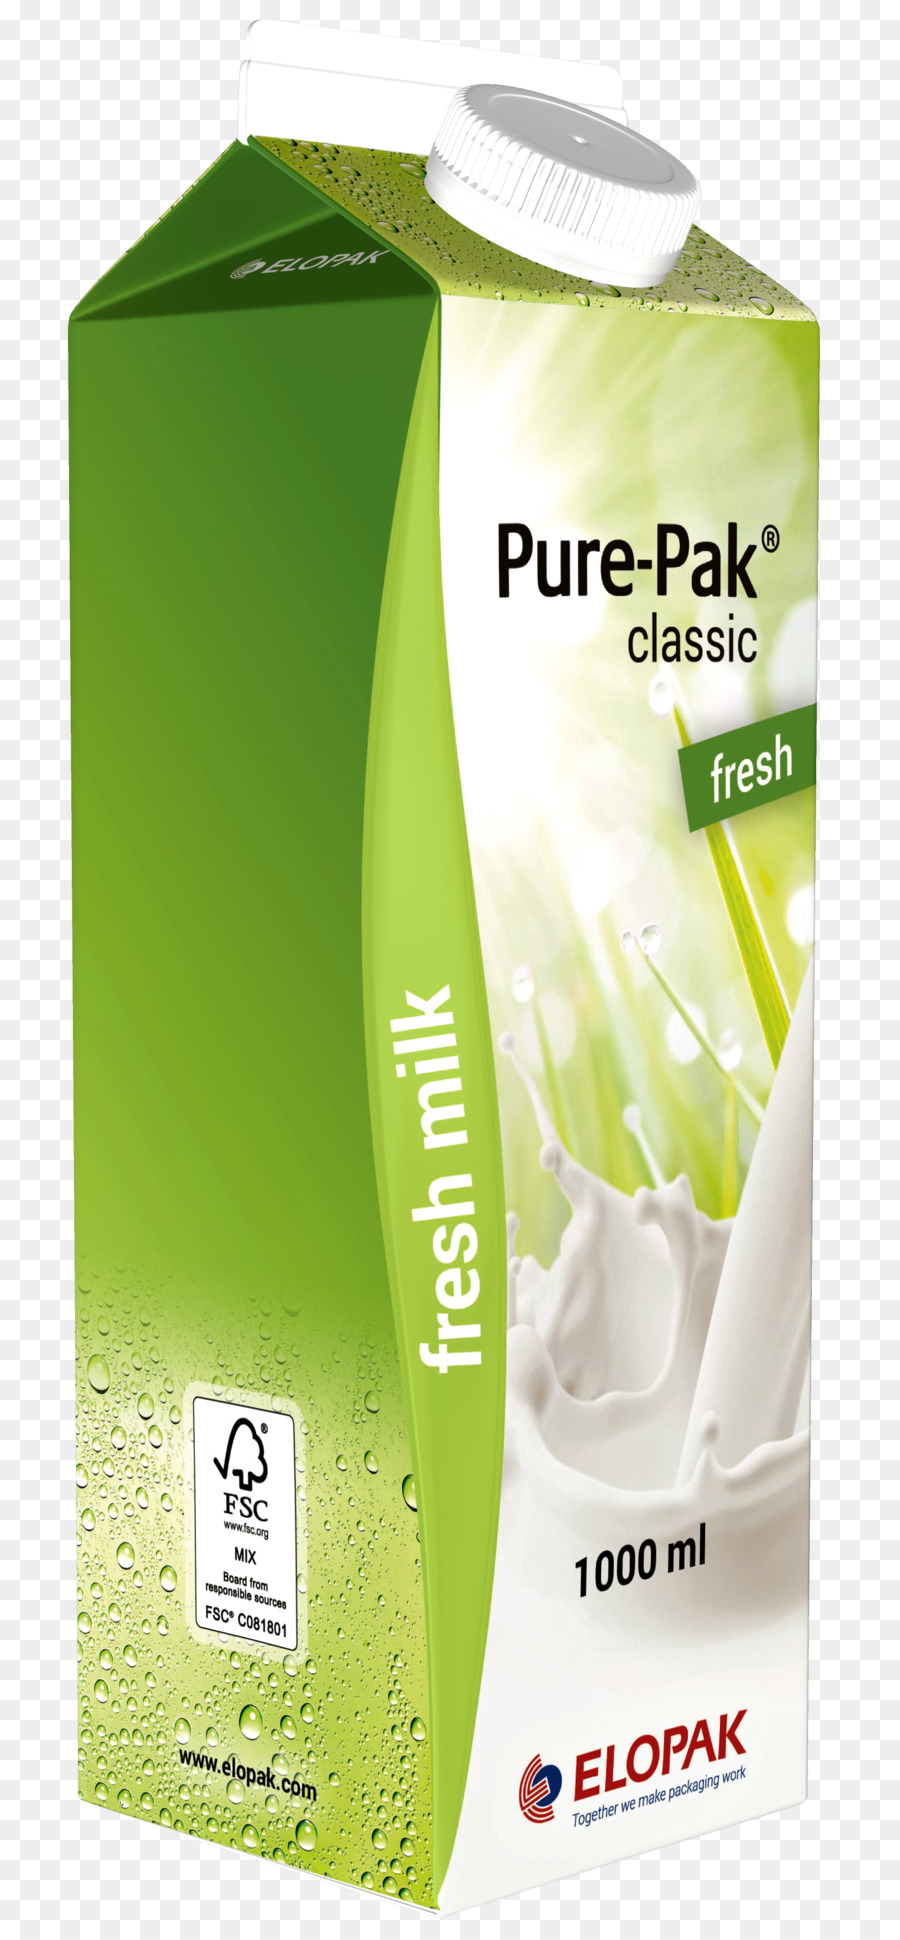 Verpackung und Kennzeichnung von Milch Elopak Karton-Papier - Milch